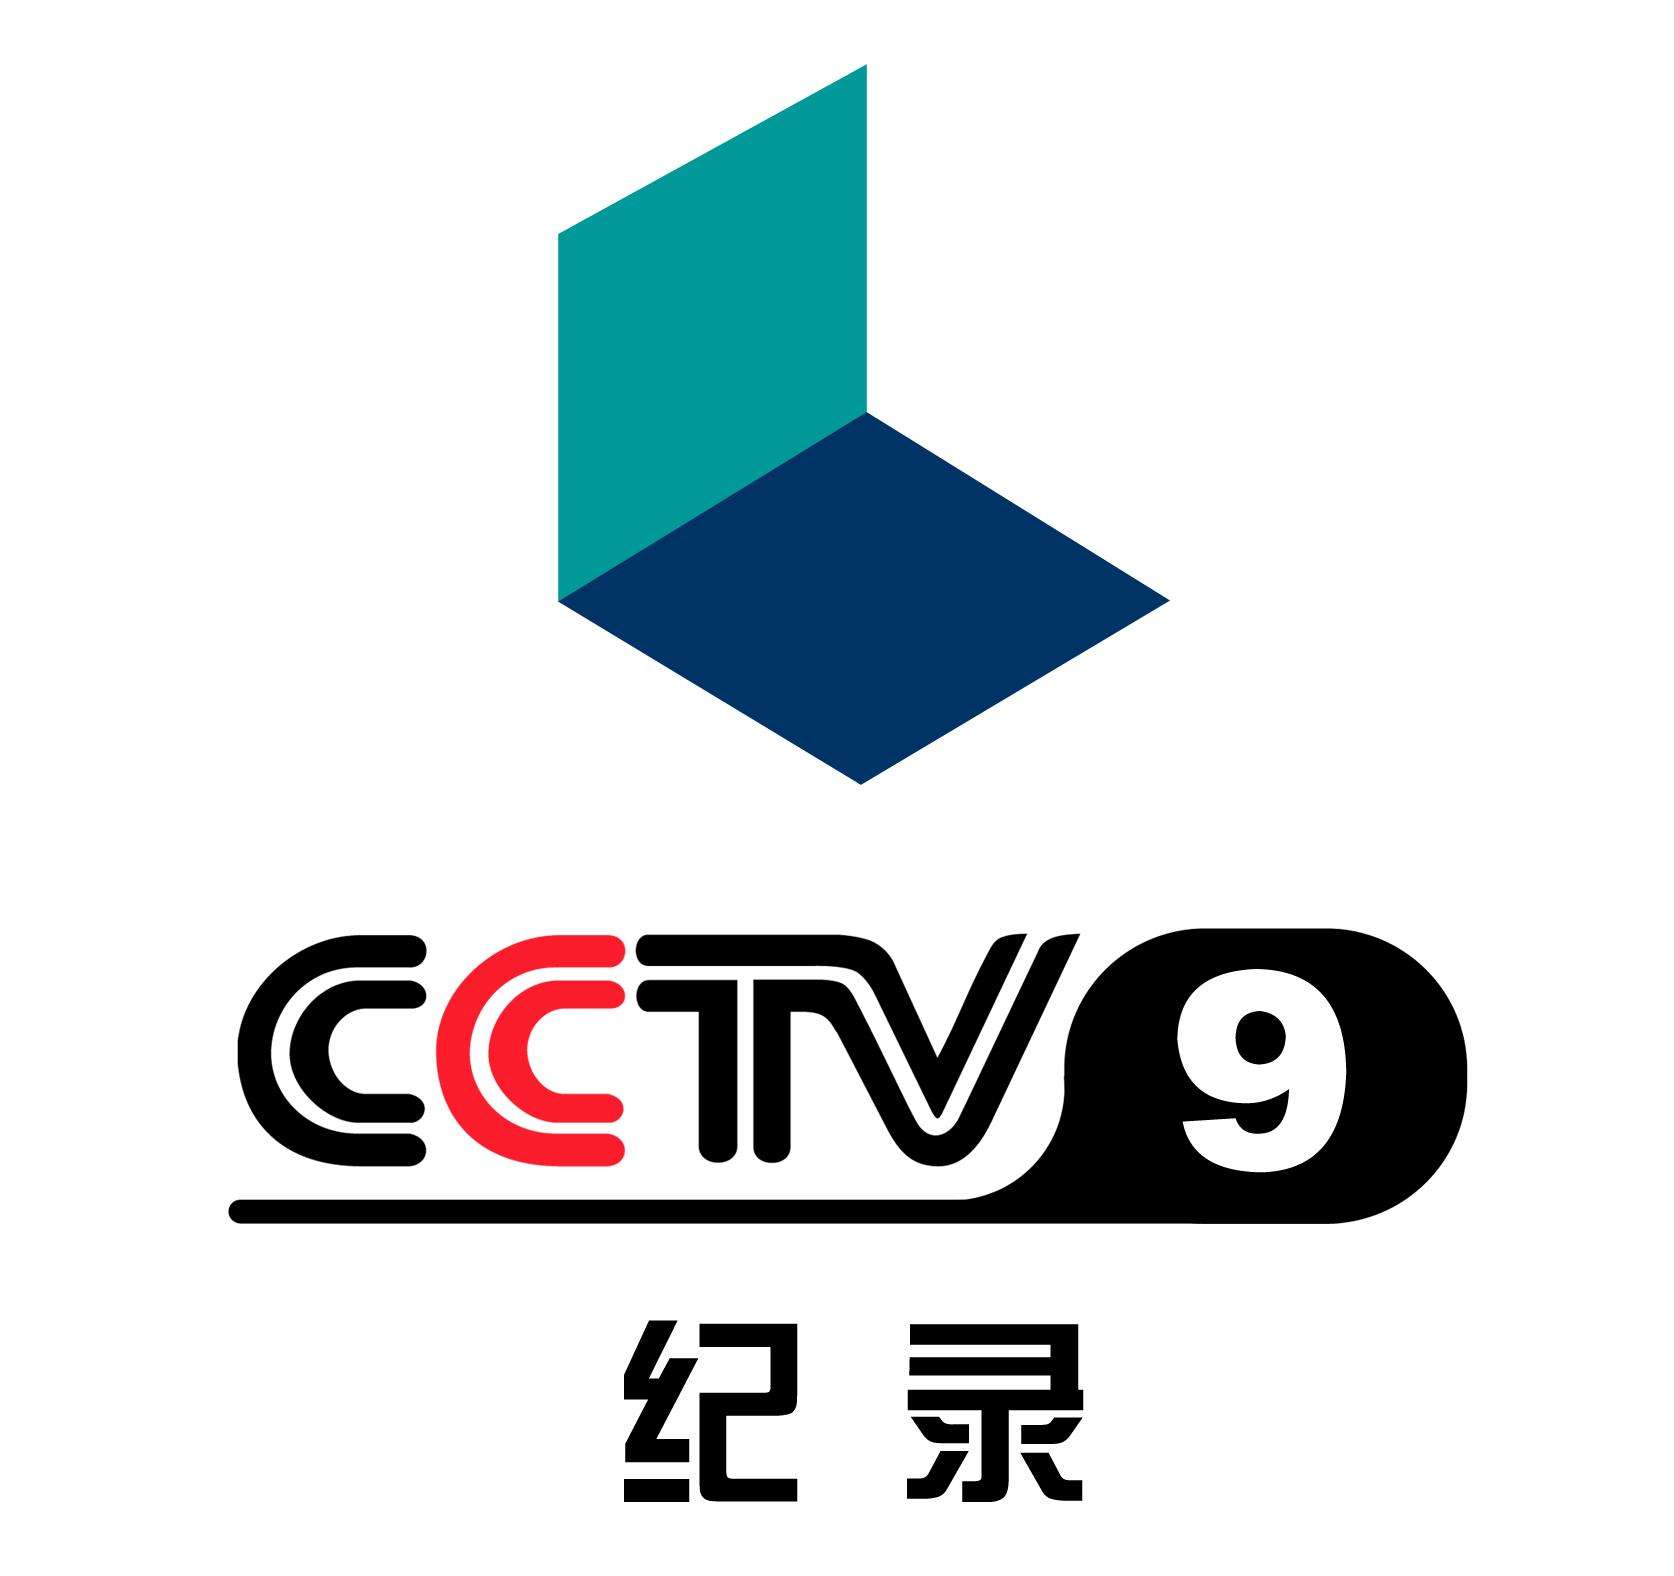 CCTV9纪录片